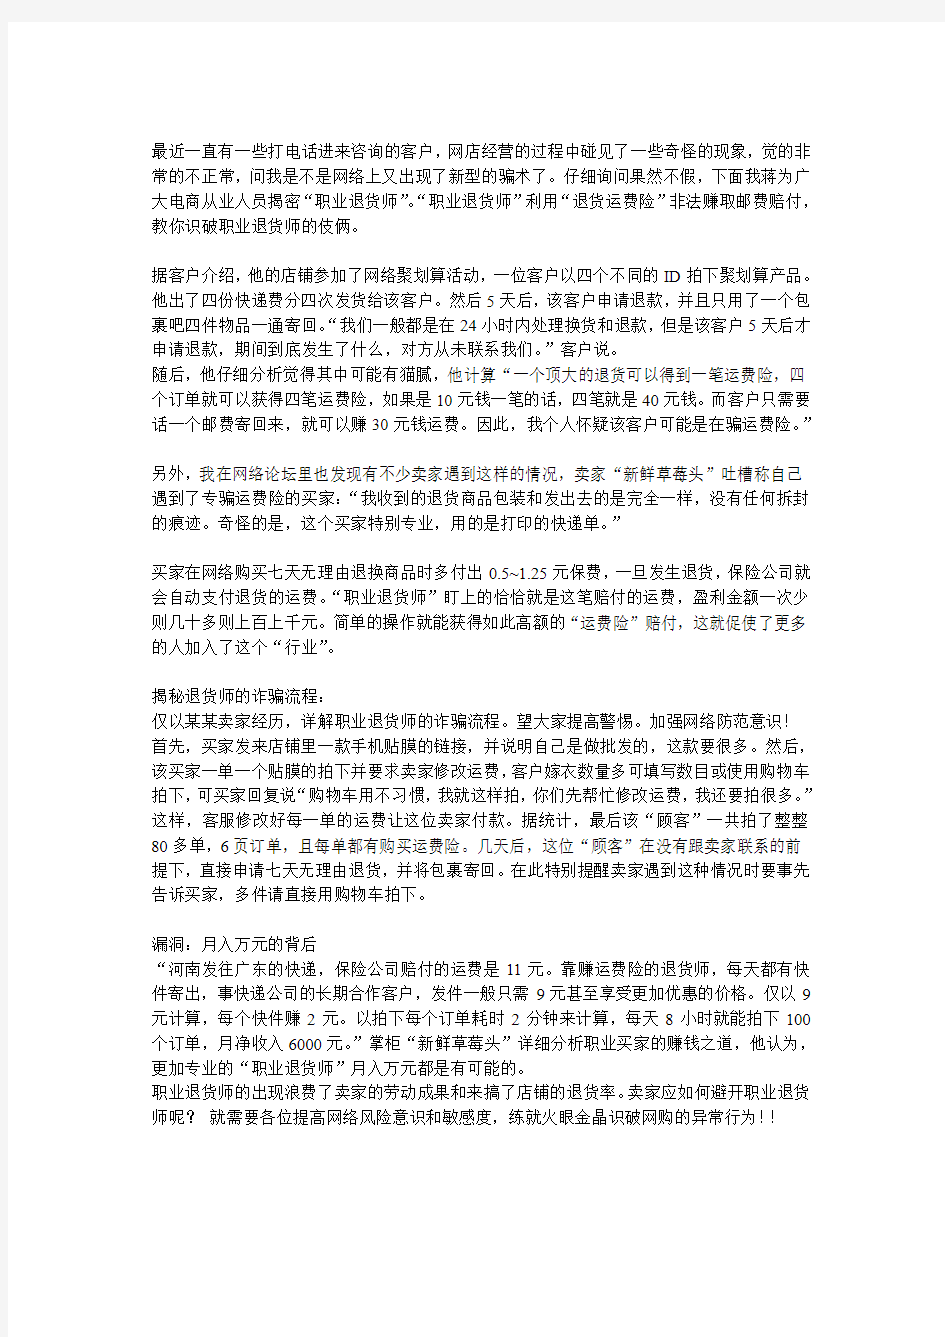 青岛淘乐高电子商务有限公司网店运营托管,骗子欺诈骗术退货篇!